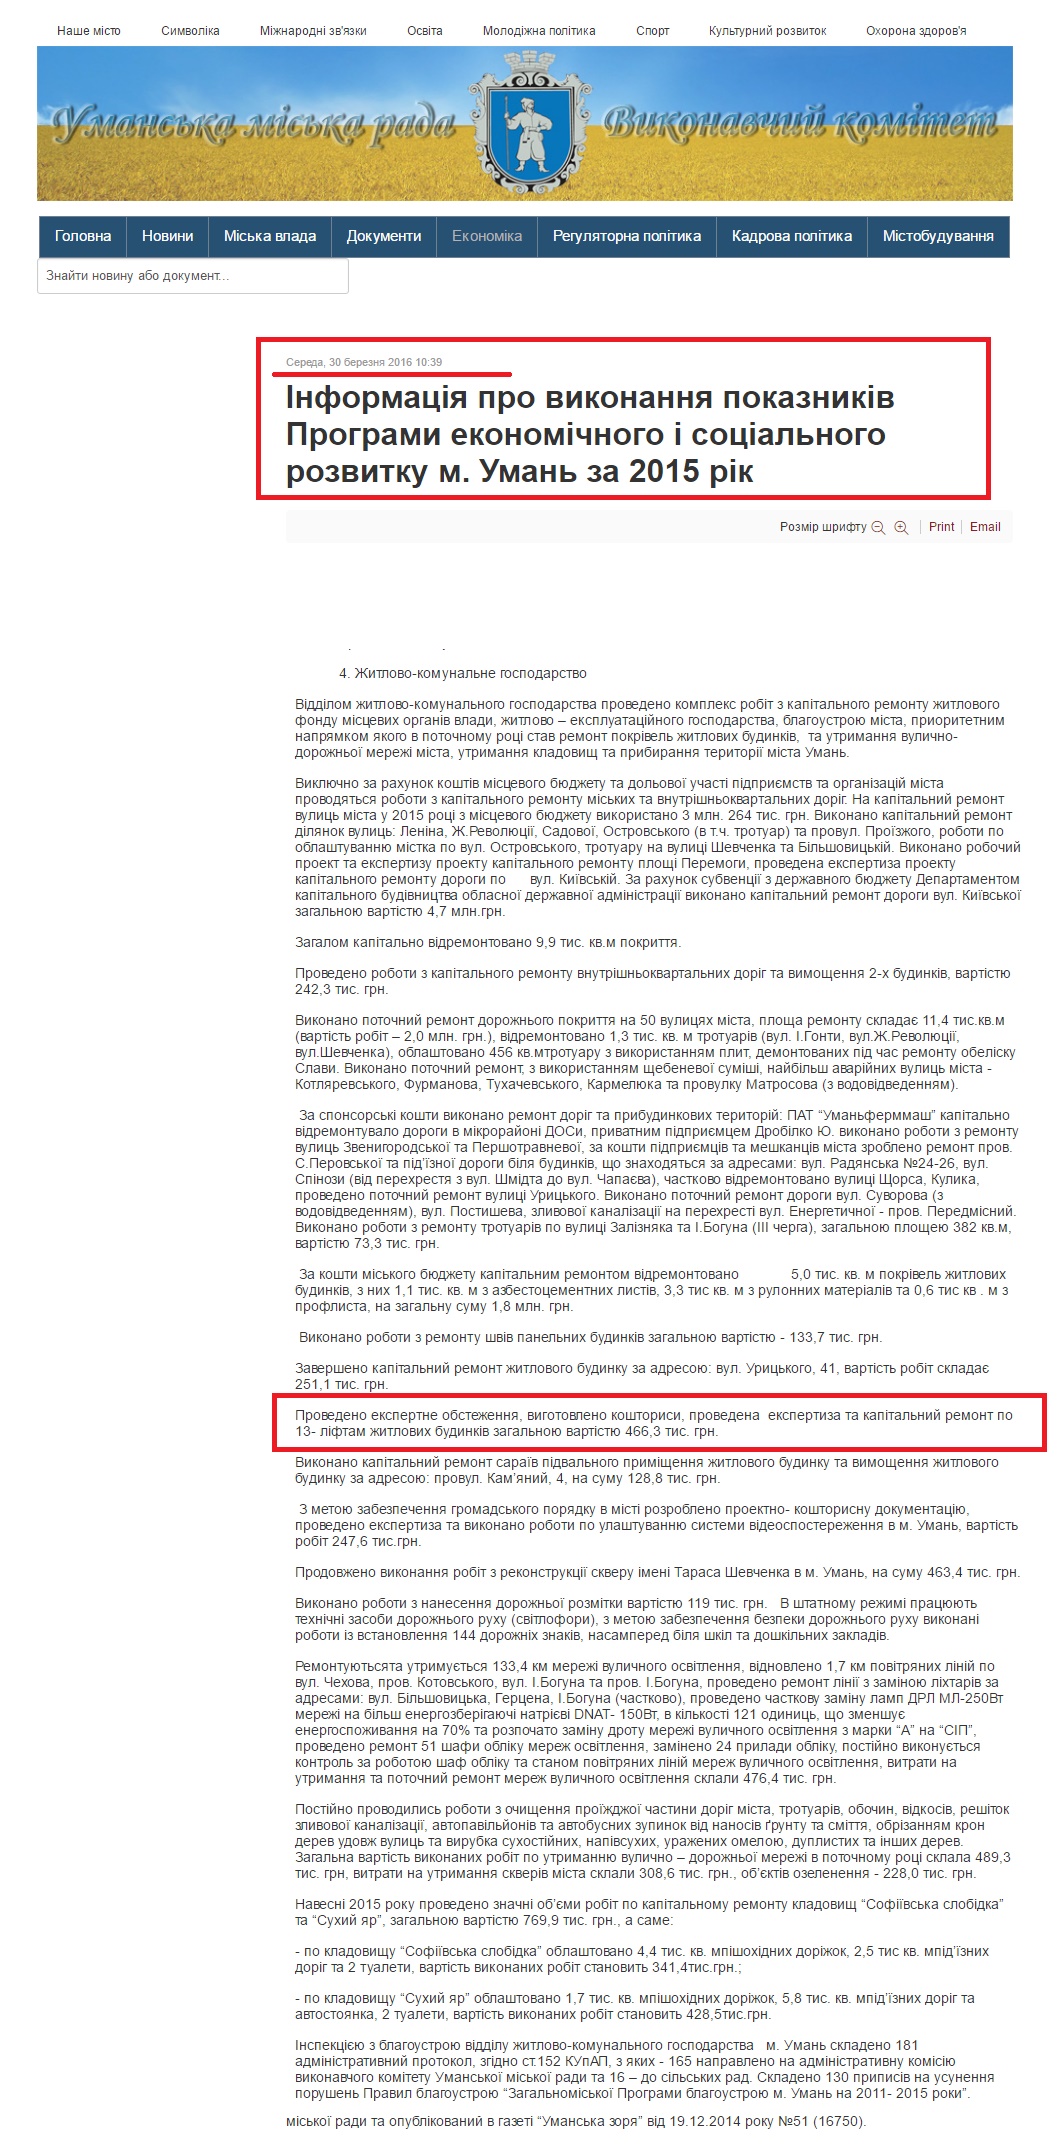 http://uman-rada.gov.ua/index.php/ekonomika/item/5906-informatsiia-pro-vykonannia-pokaznykiv-prohramy-ekonomichnoho-i-sotsialnoho-rozvytku-m-uman-za-2015-rik